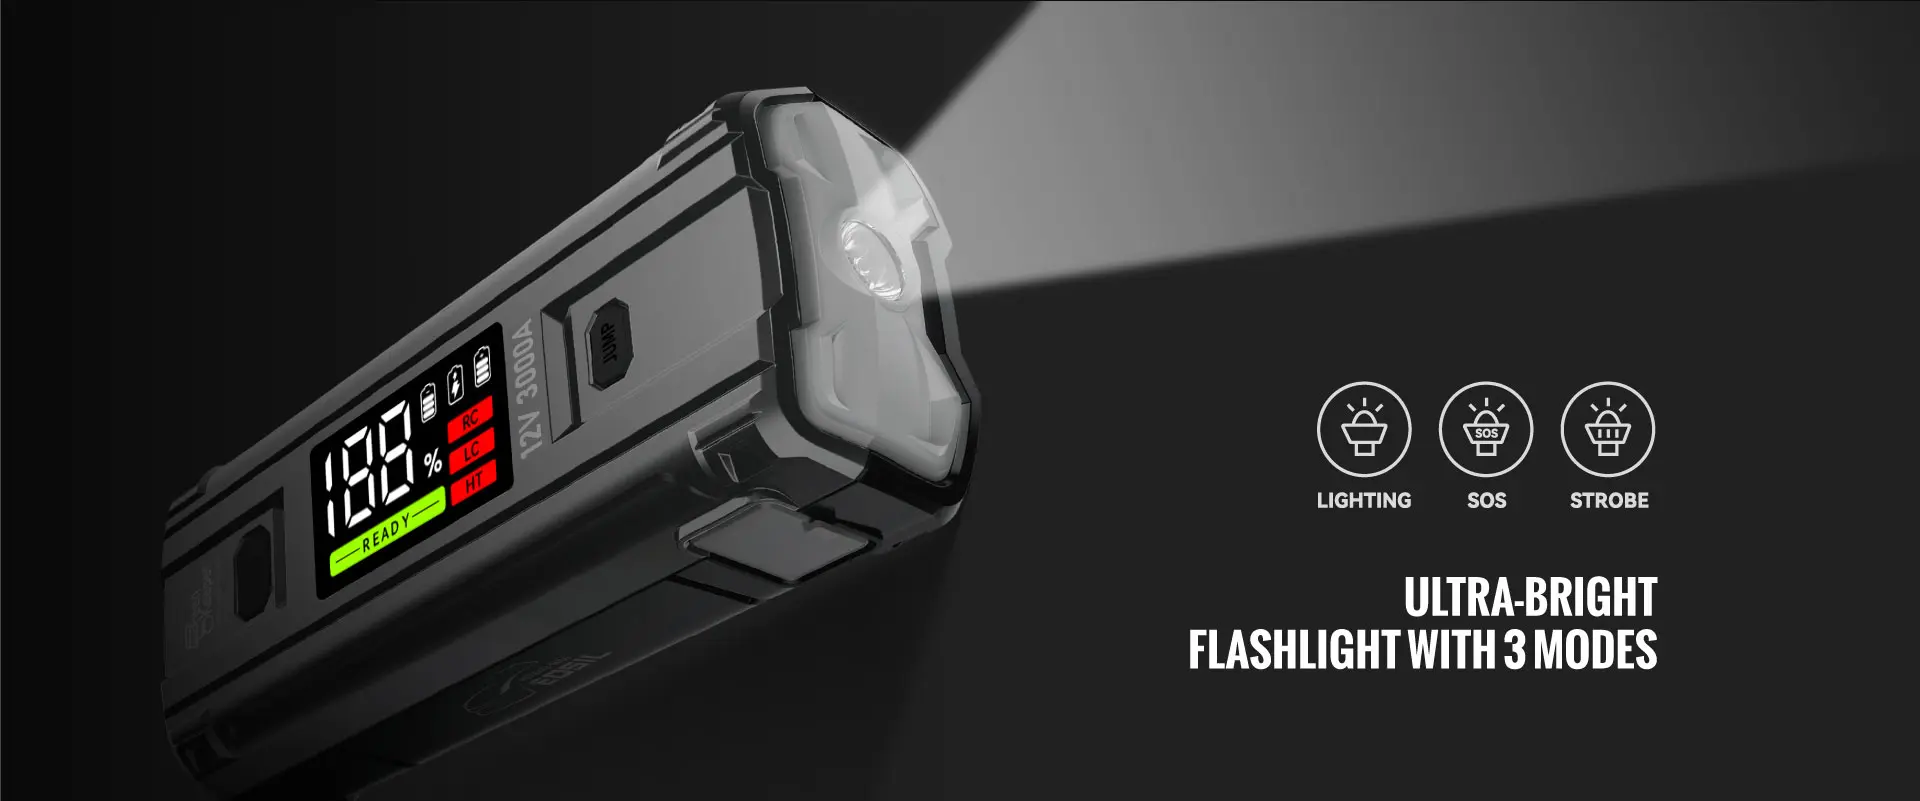 Ultrabright-Flashlight-SOS-Strobe-Lightening-Green-Keeper-GK-1203-Jump-Starter-3000A-12V-20000mAh-8.0Gas-8.0Diesel-Car-Jump-Starter-Portable-Jump-Starter-Jump-Starter-Battery-Pack-Portable-Car-Jump-Starter